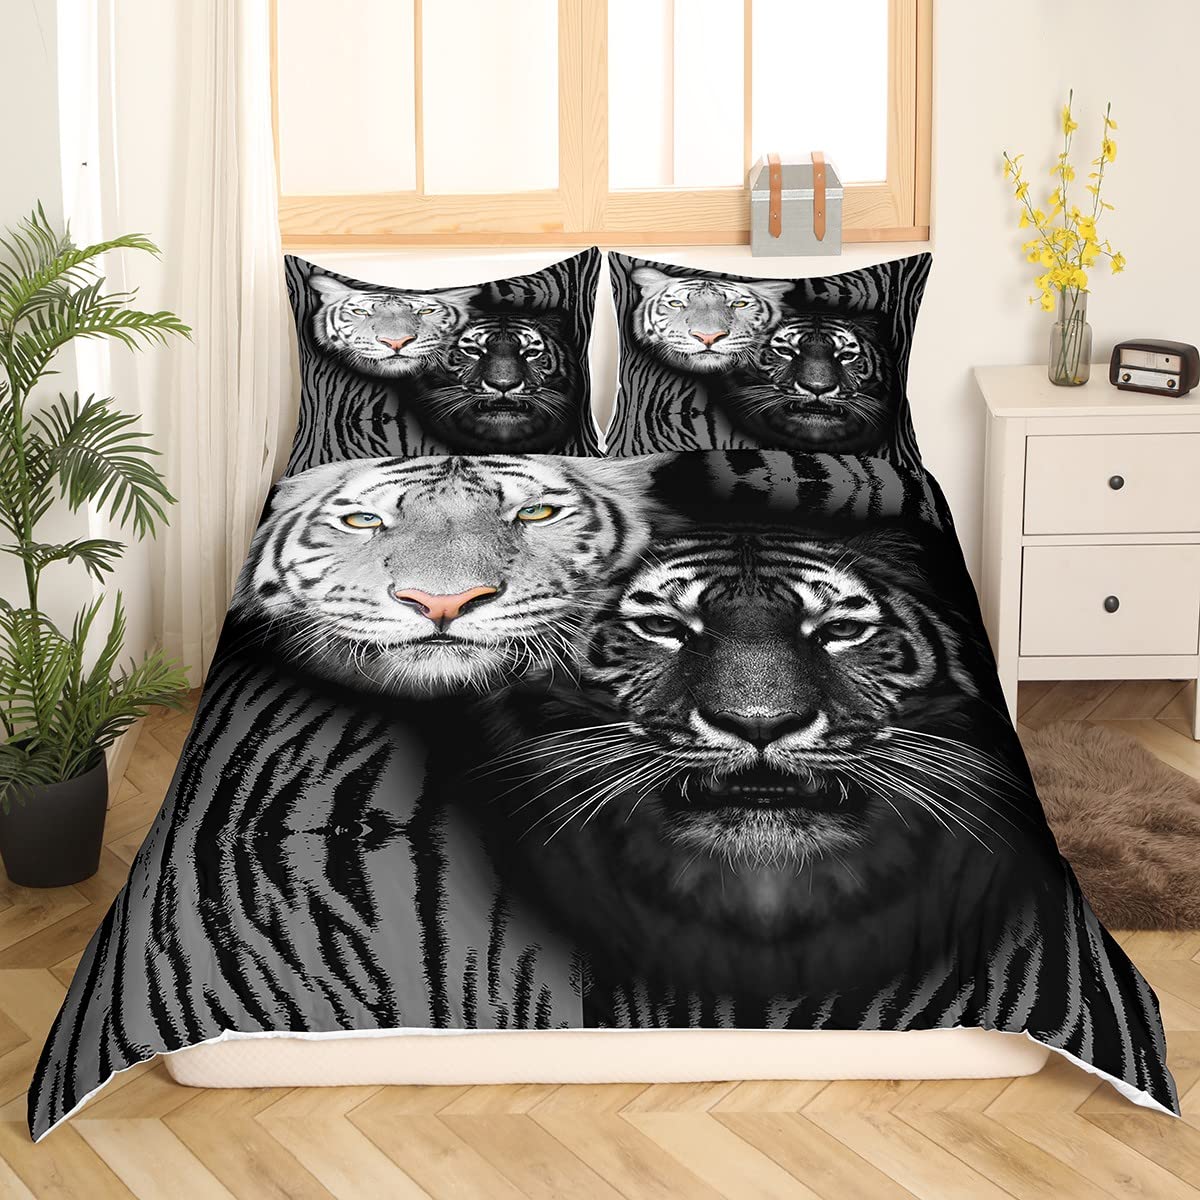 Black and white tiger duvet cover